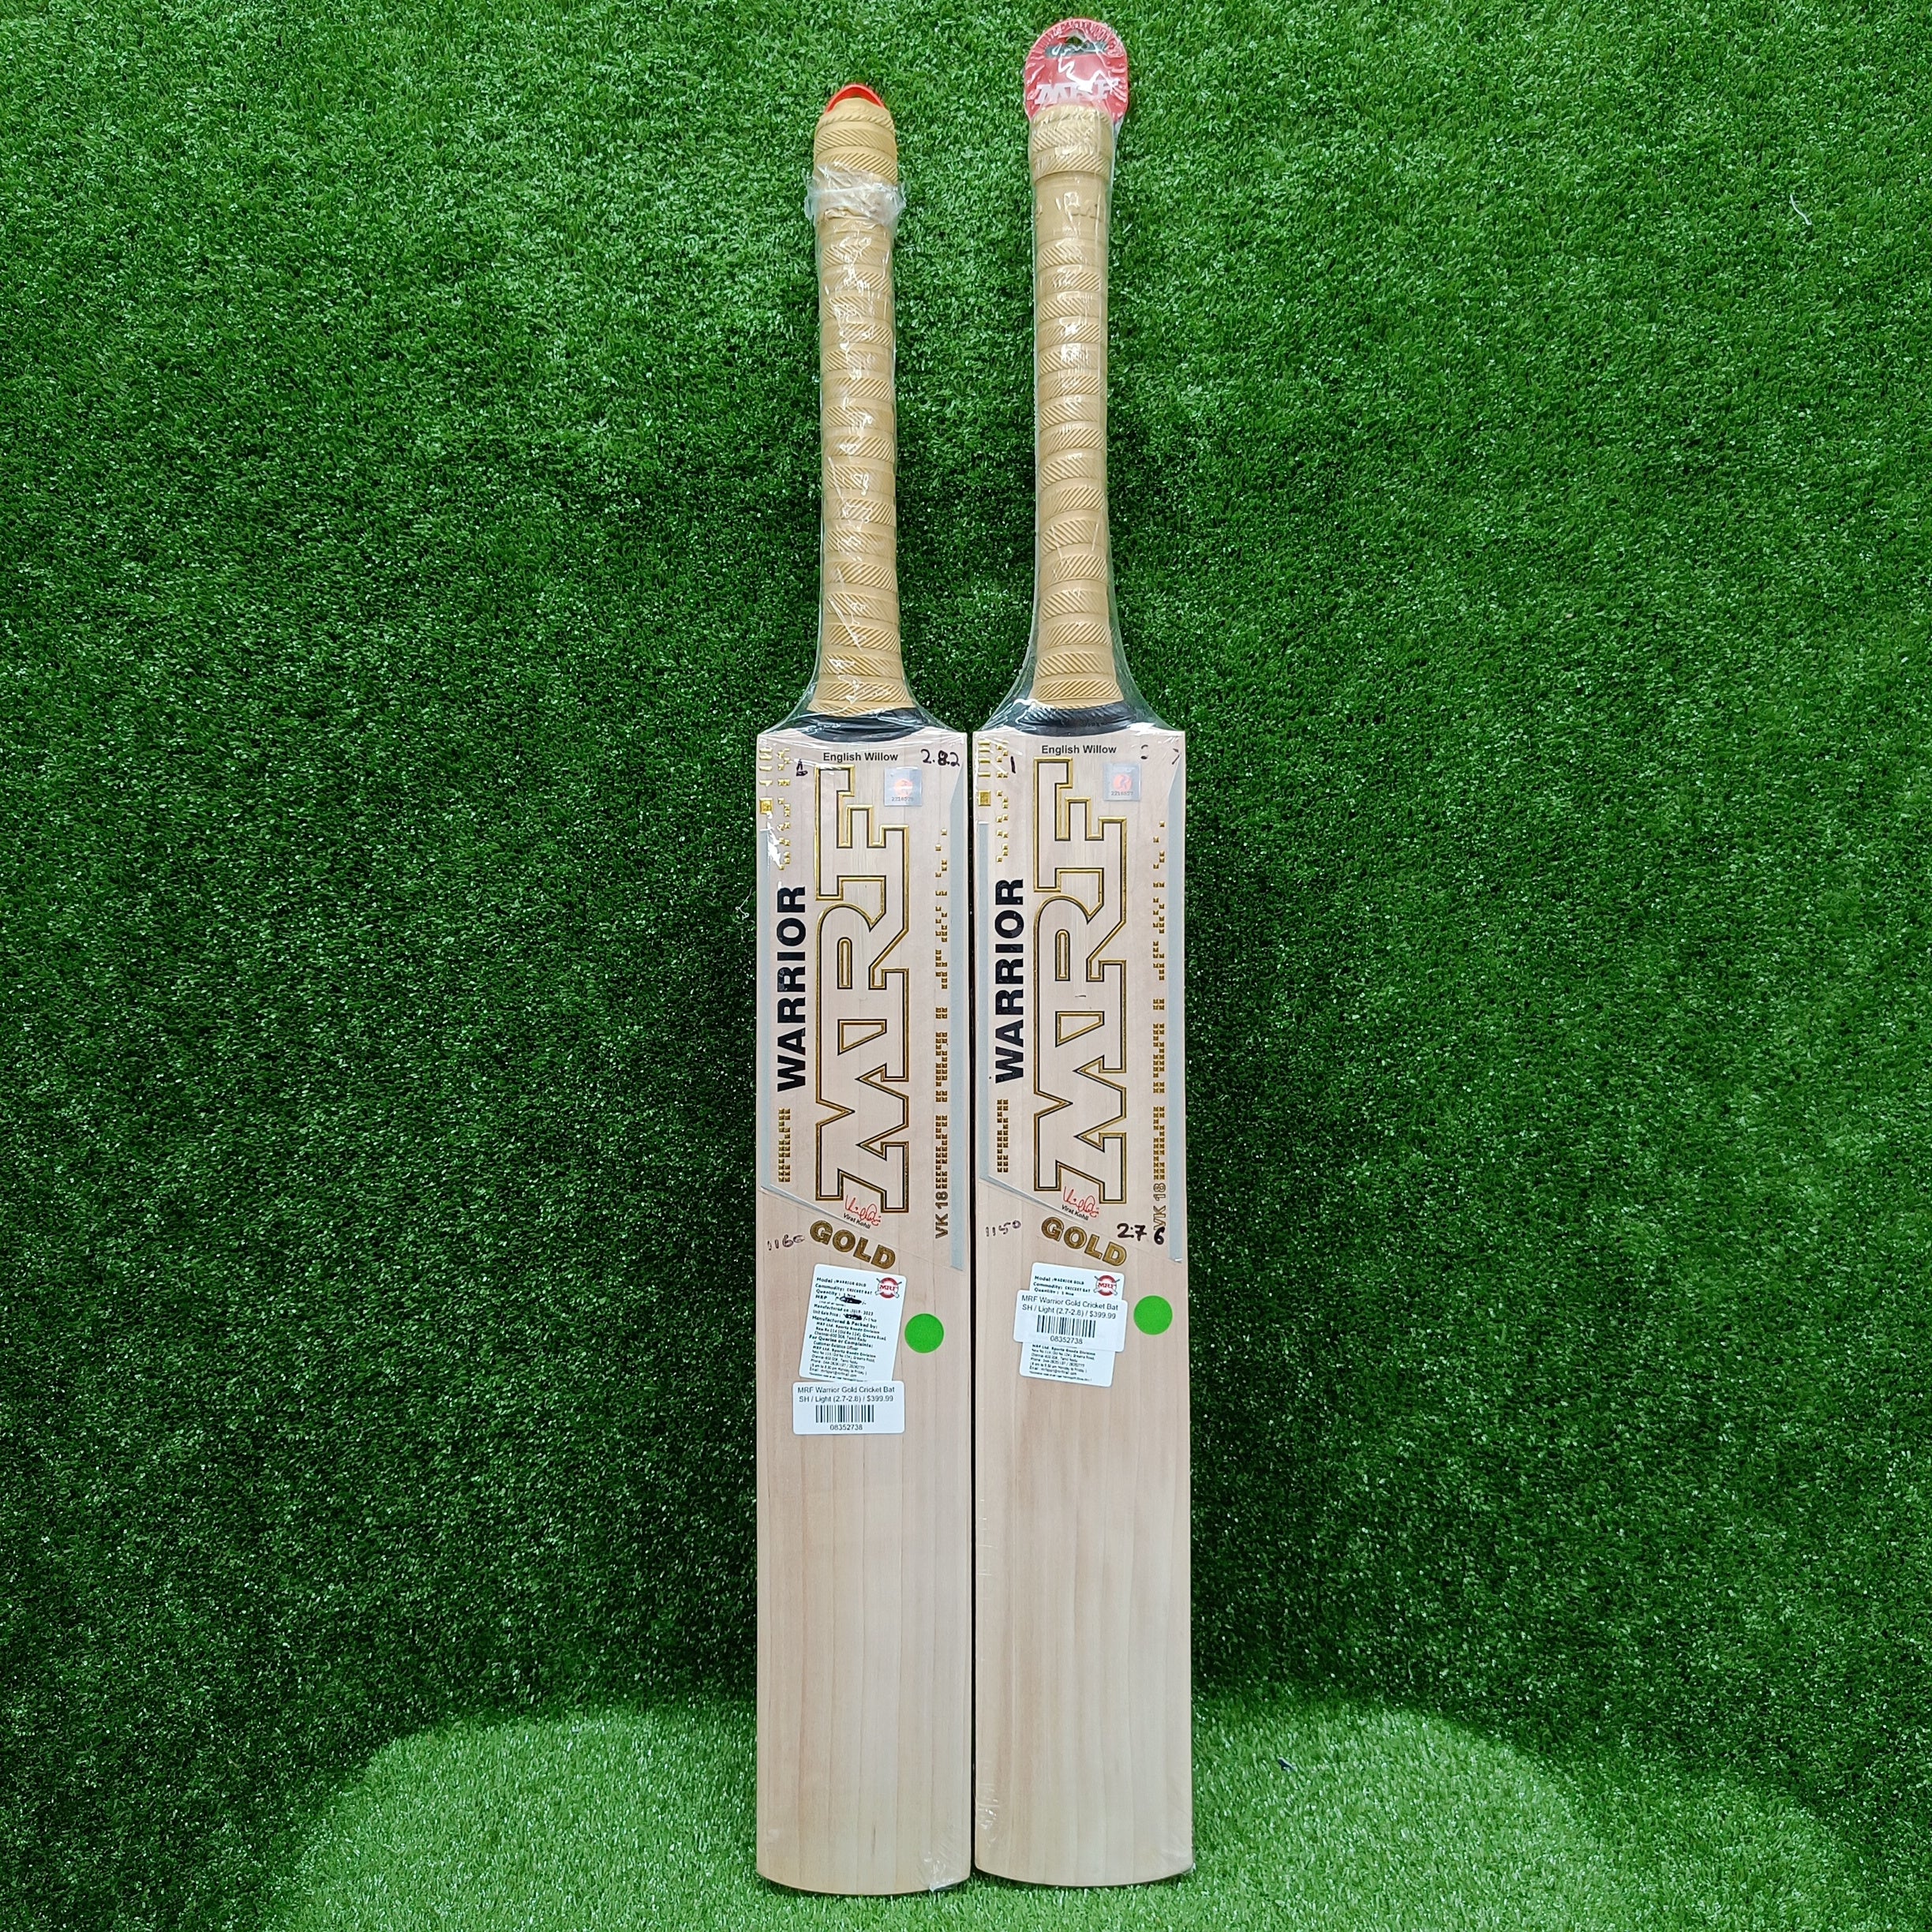 MRF Warrior Gold Cricket Bat